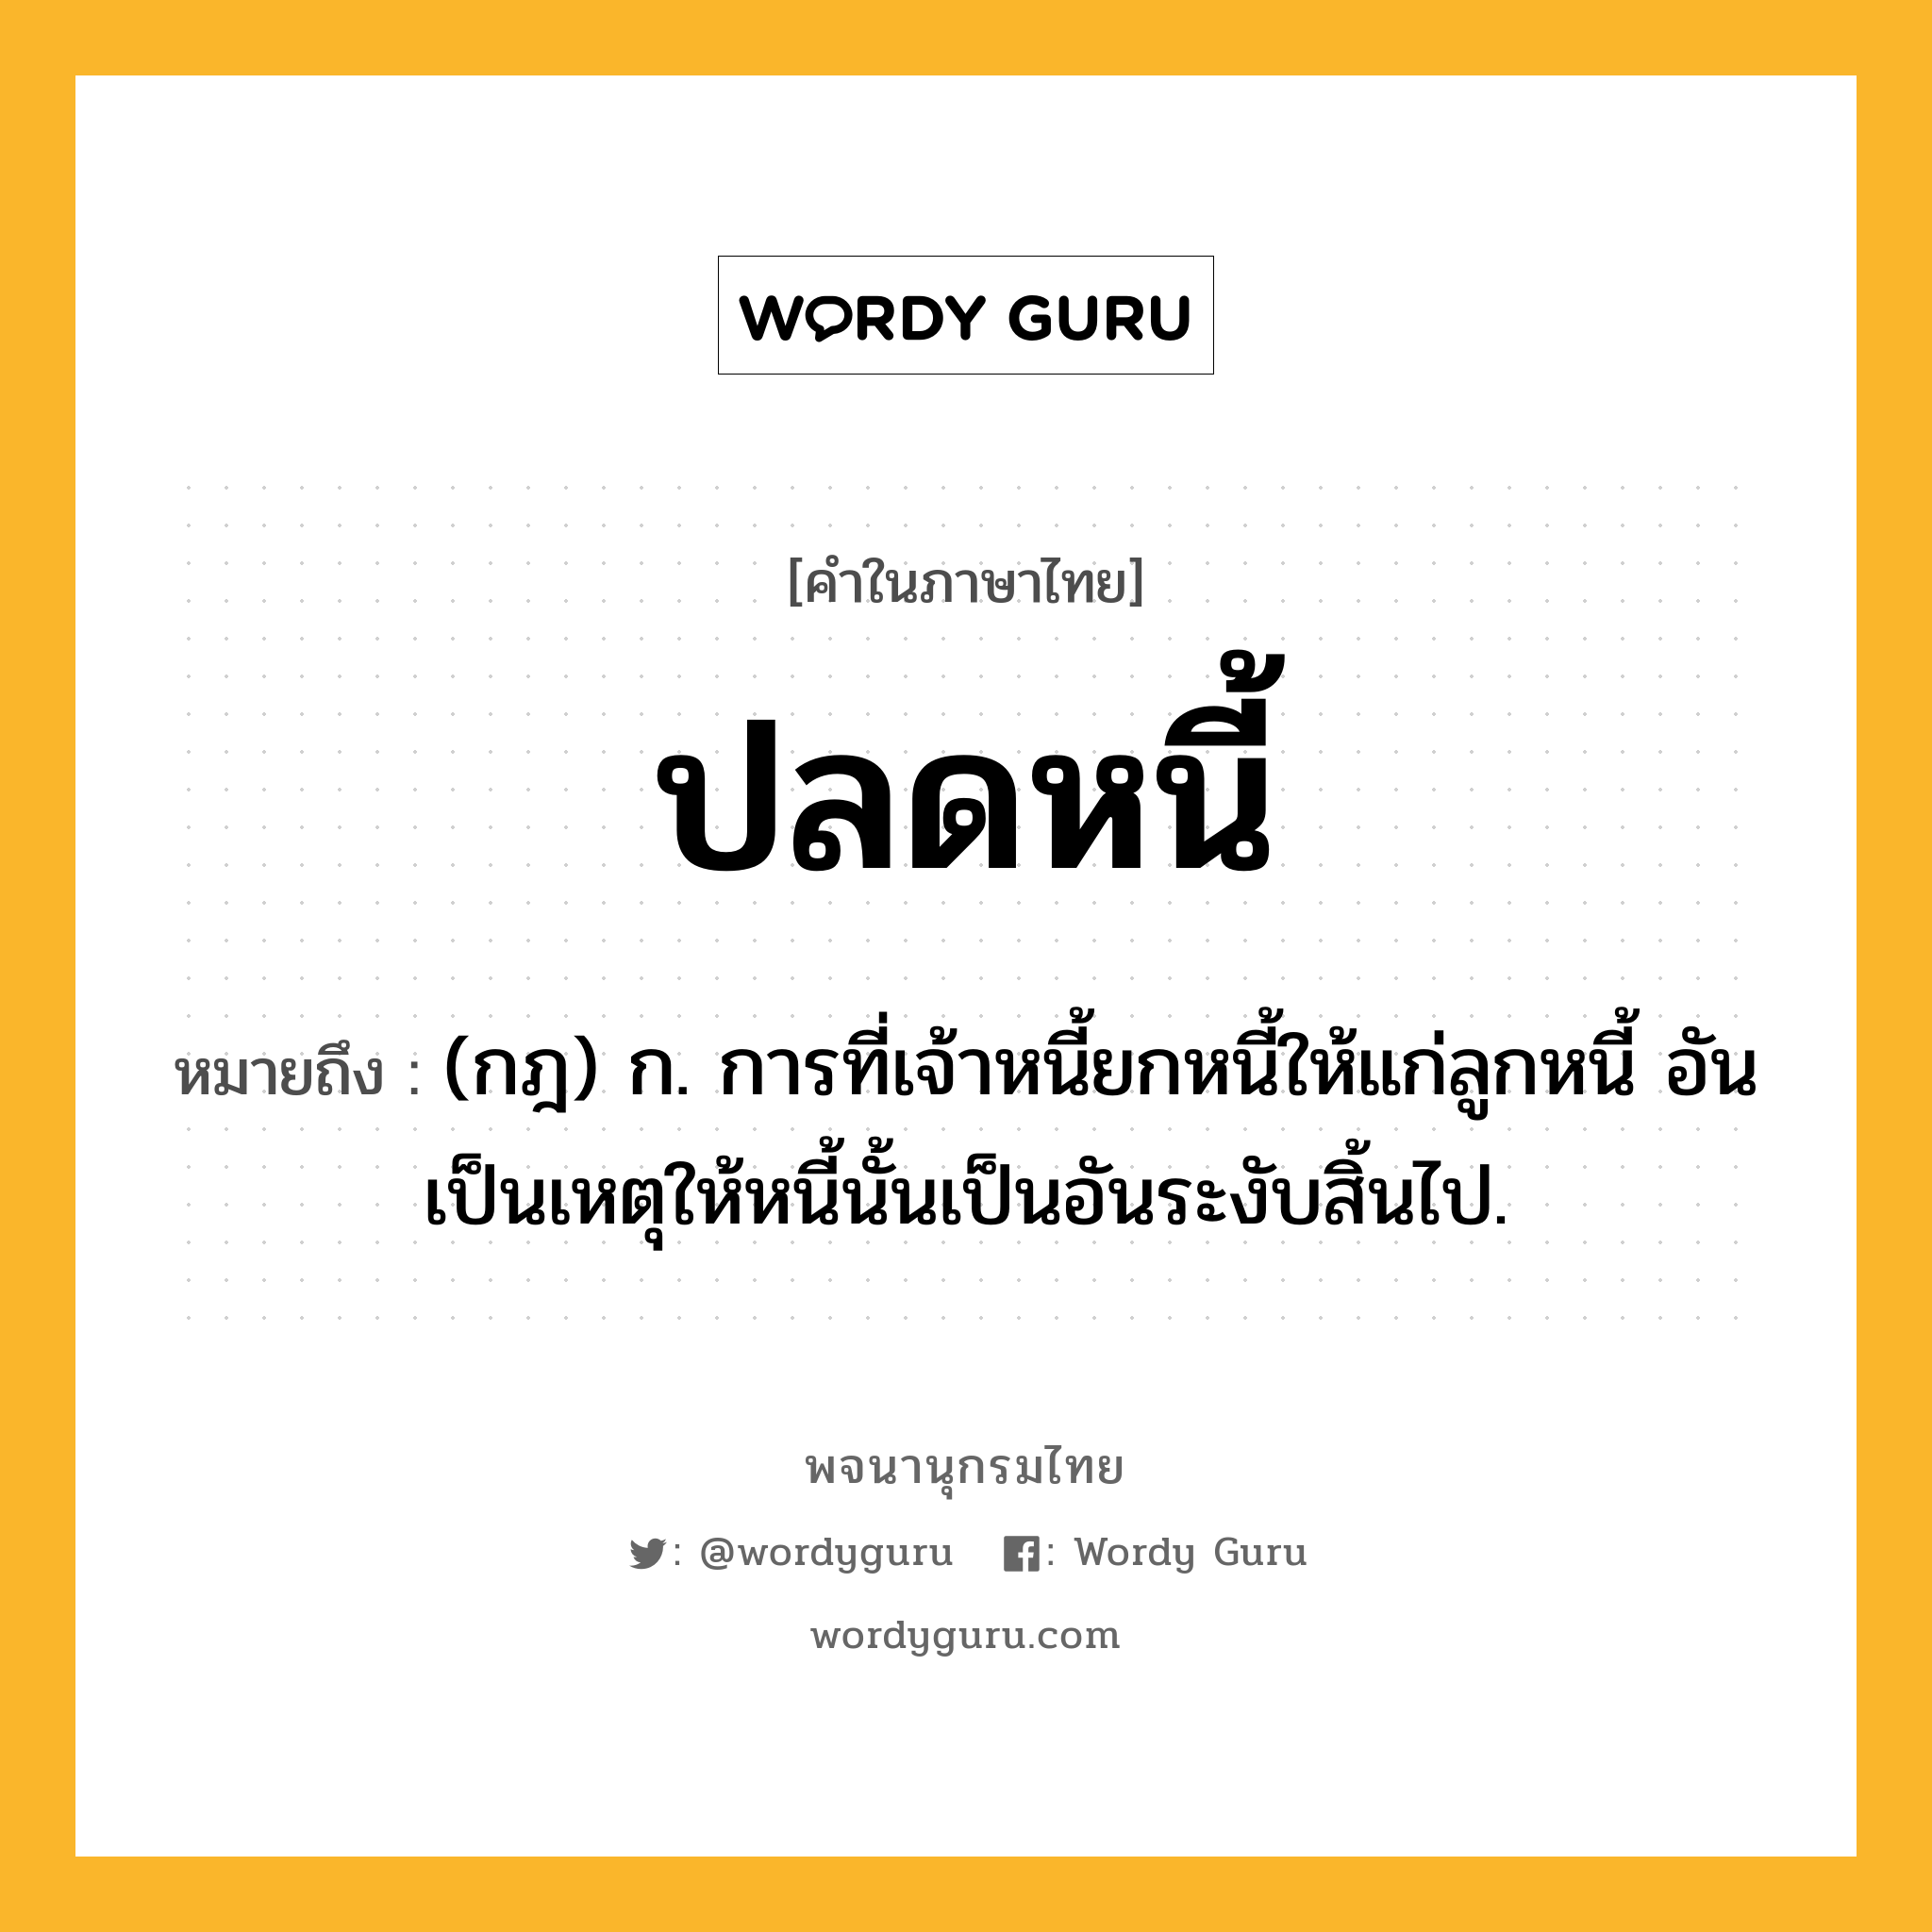 ปลดหนี้ หมายถึงอะไร?, คำในภาษาไทย ปลดหนี้ หมายถึง (กฎ) ก. การที่เจ้าหนี้ยกหนี้ให้แก่ลูกหนี้ อันเป็นเหตุให้หนี้นั้นเป็นอันระงับสิ้นไป.